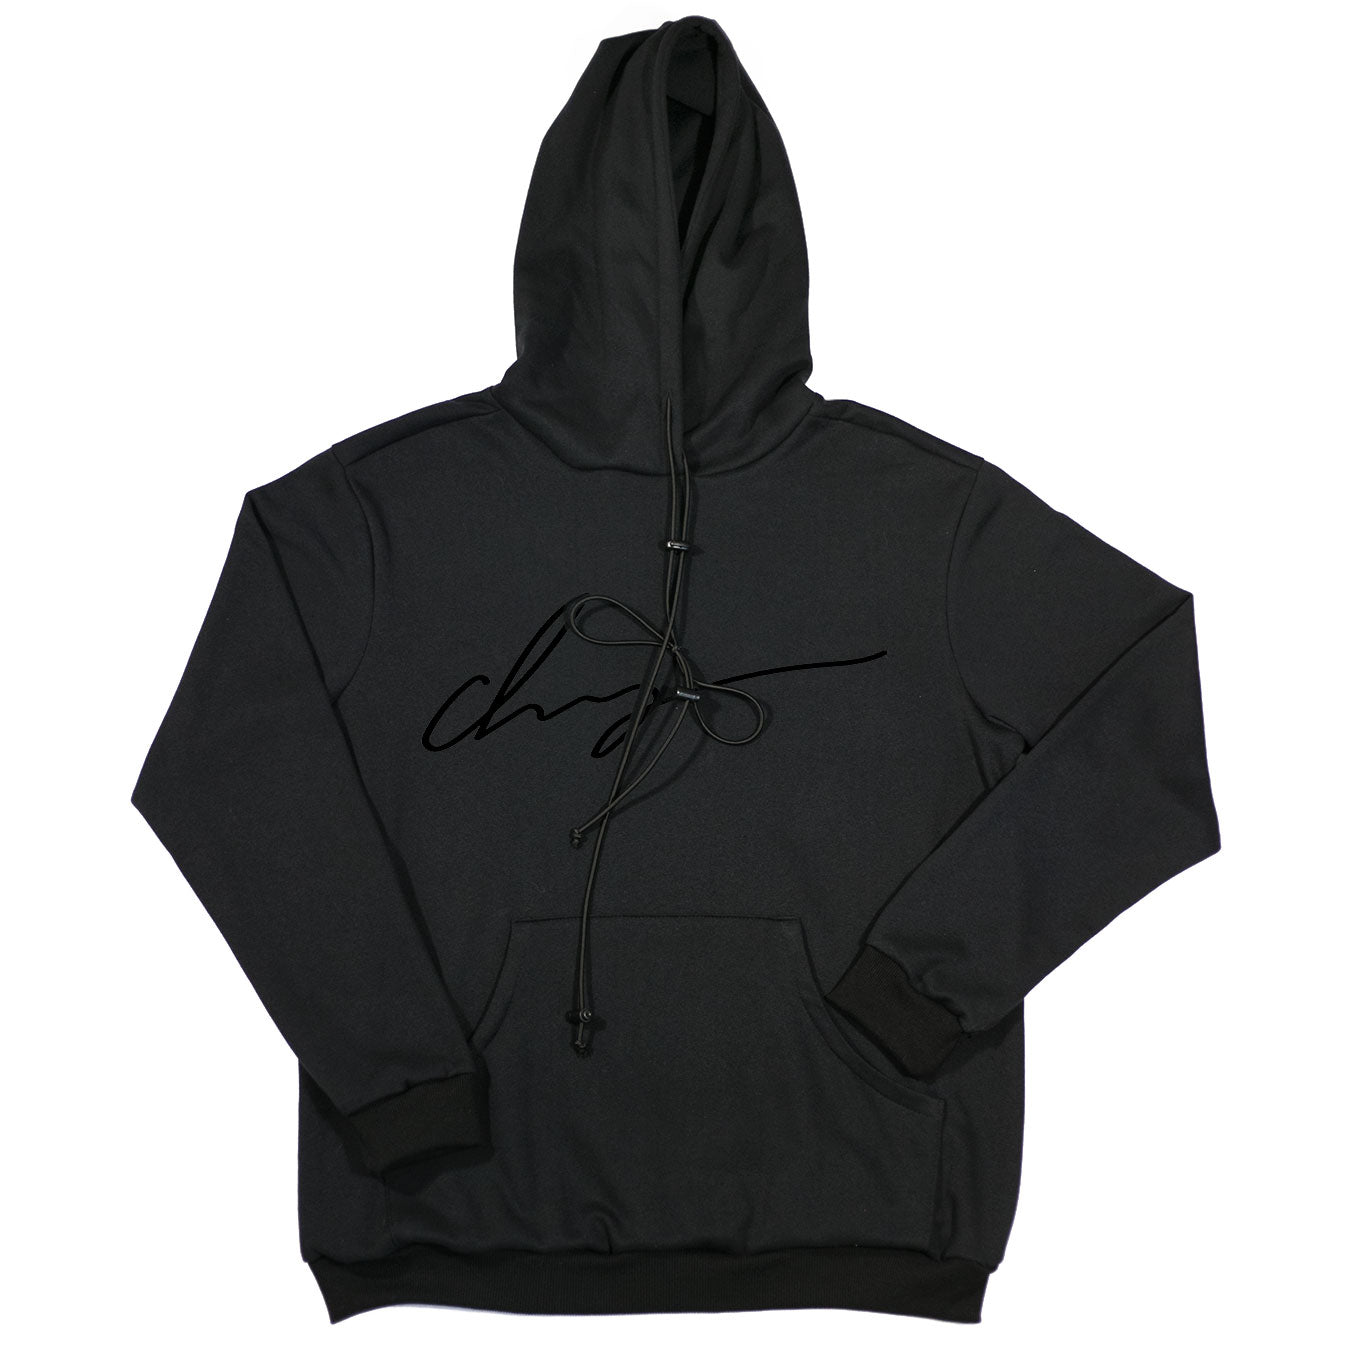 Chaigne Black Signature hoodie